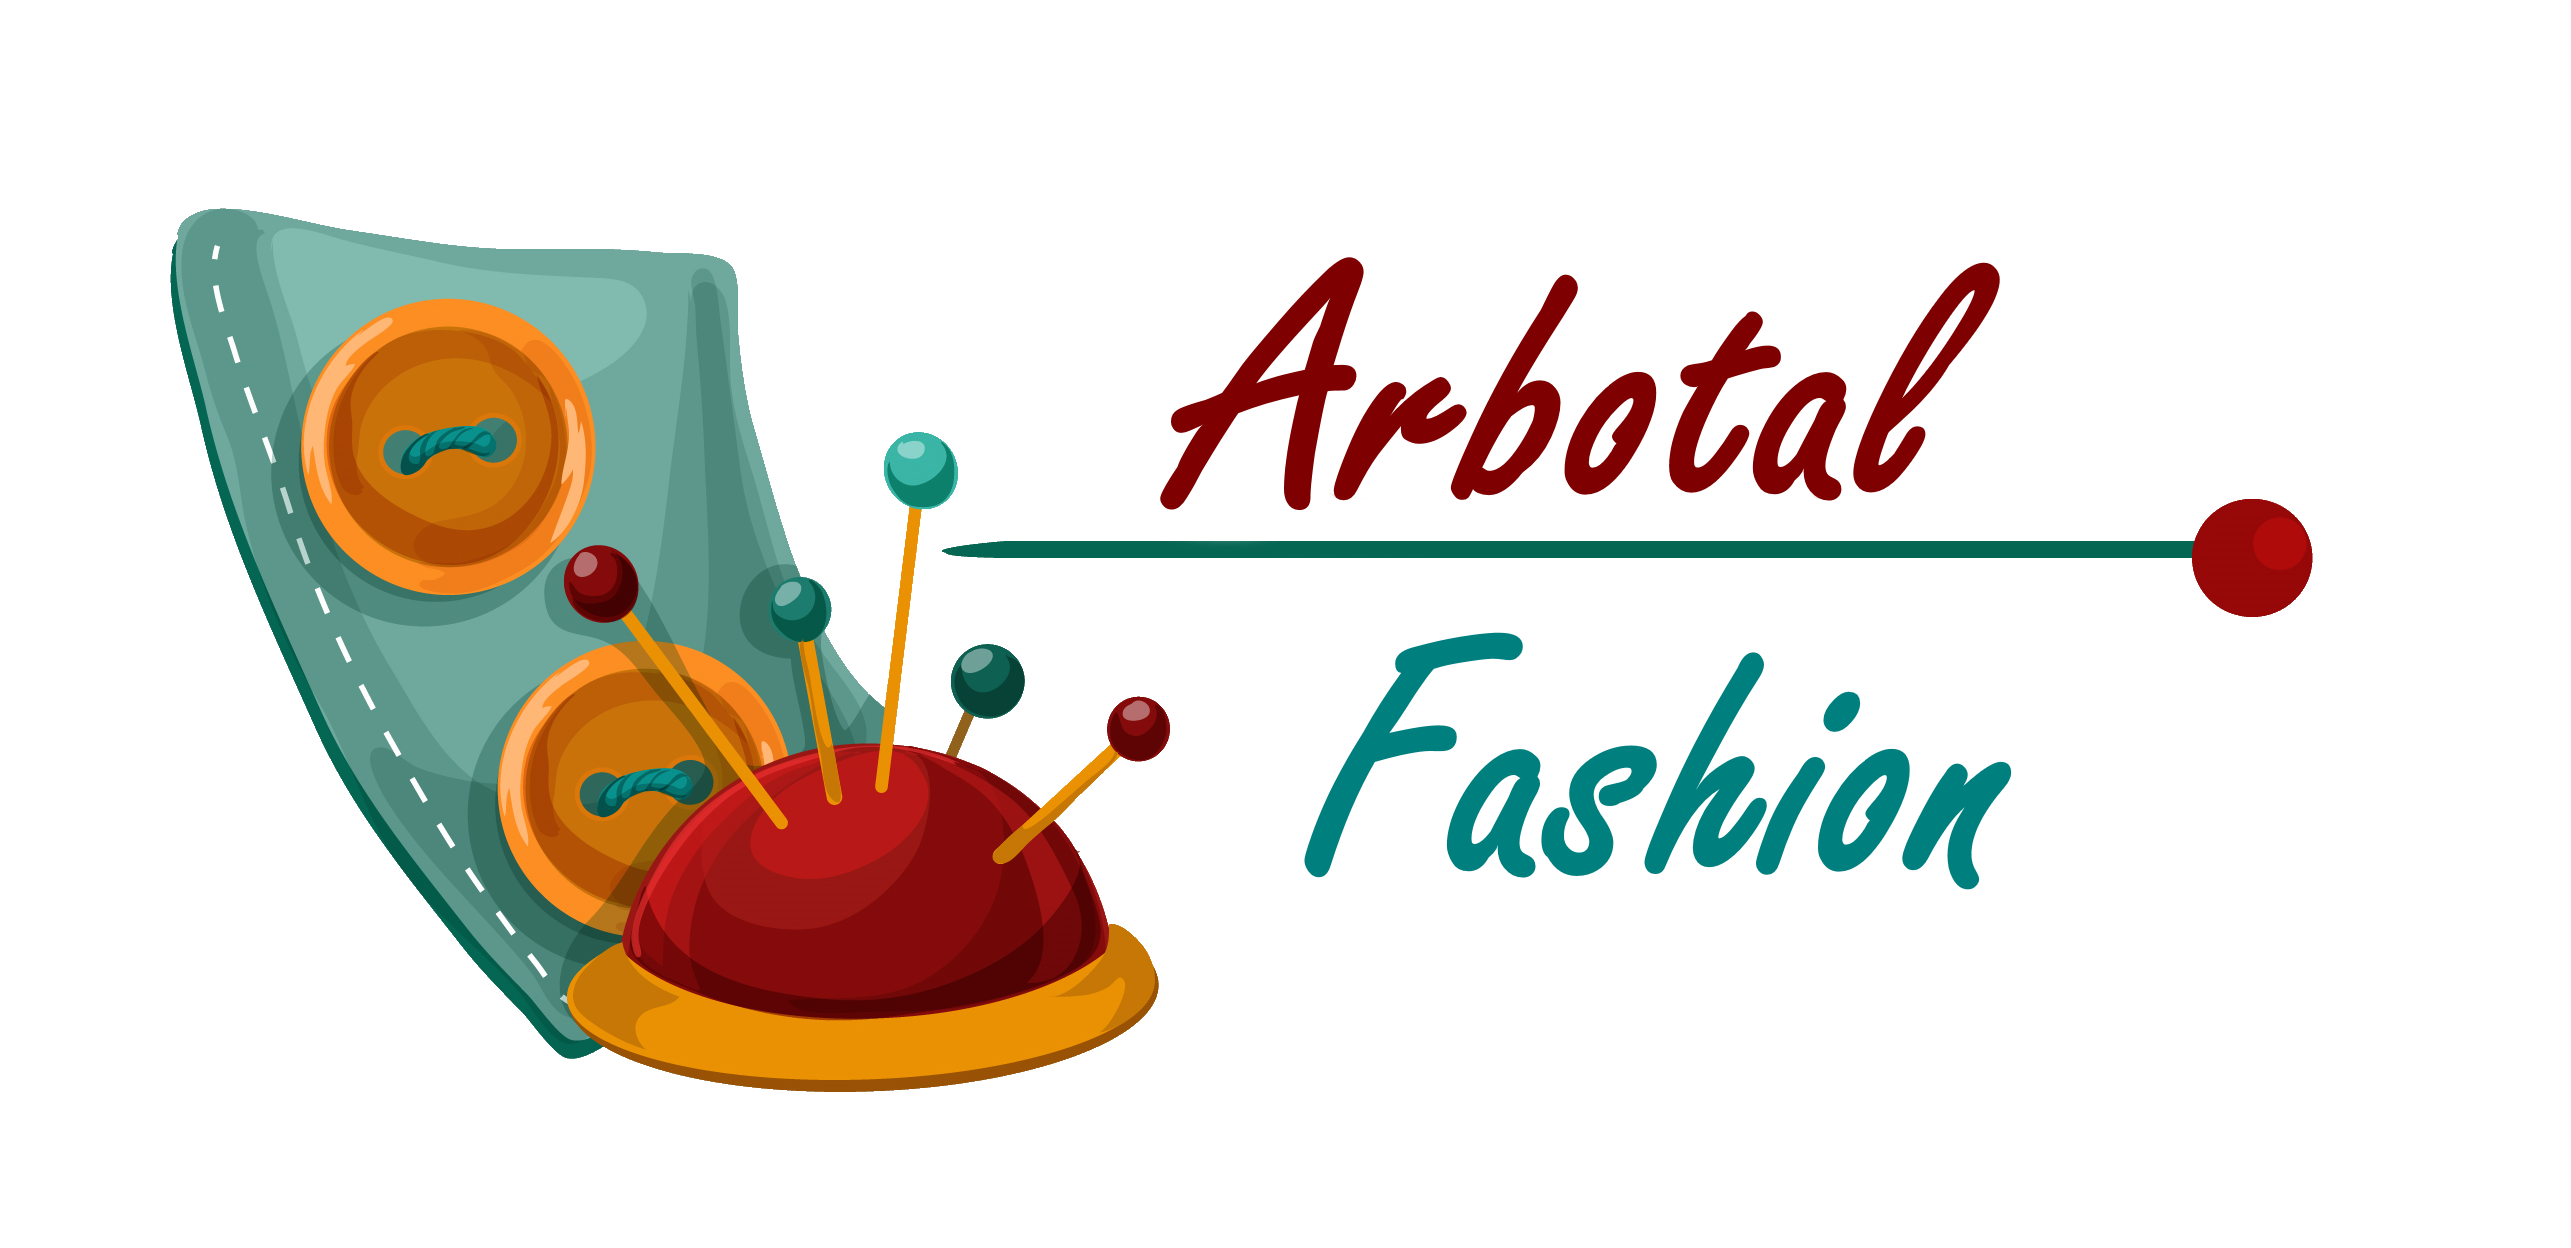 Arbotal Fashion